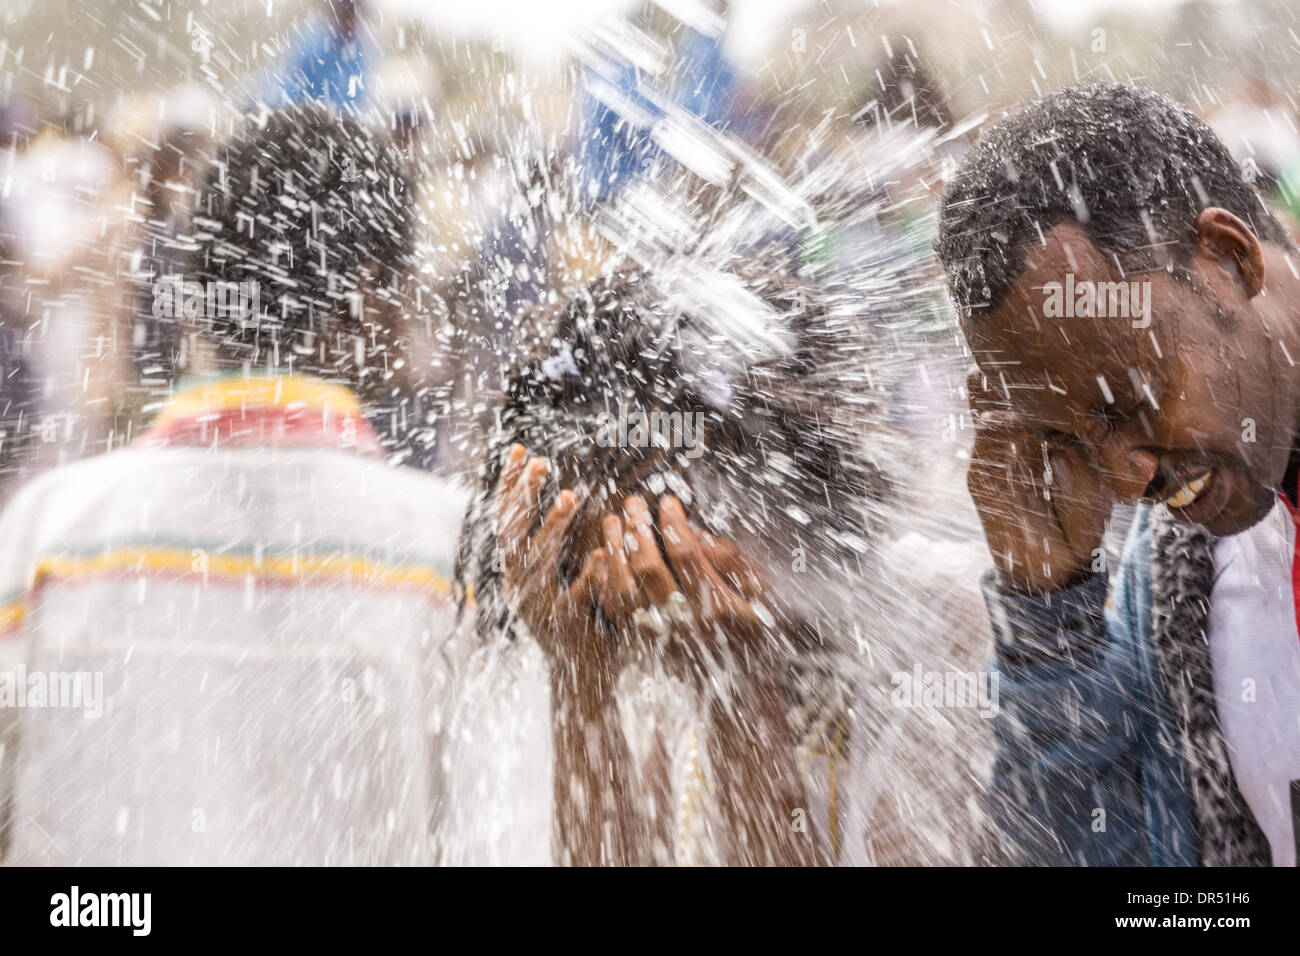 Etiopia ad Addis Abeba . Xix gen, 2014. L'acqua santa è spruzzato sulla folla frequentando Timket celebrazioni dell Epifania, che commemora il battesimo di Gesù, il 19 gennaio 2014 ad Addis Abeba. Credito: Dereje Belachew/Alamy Live News Foto Stock